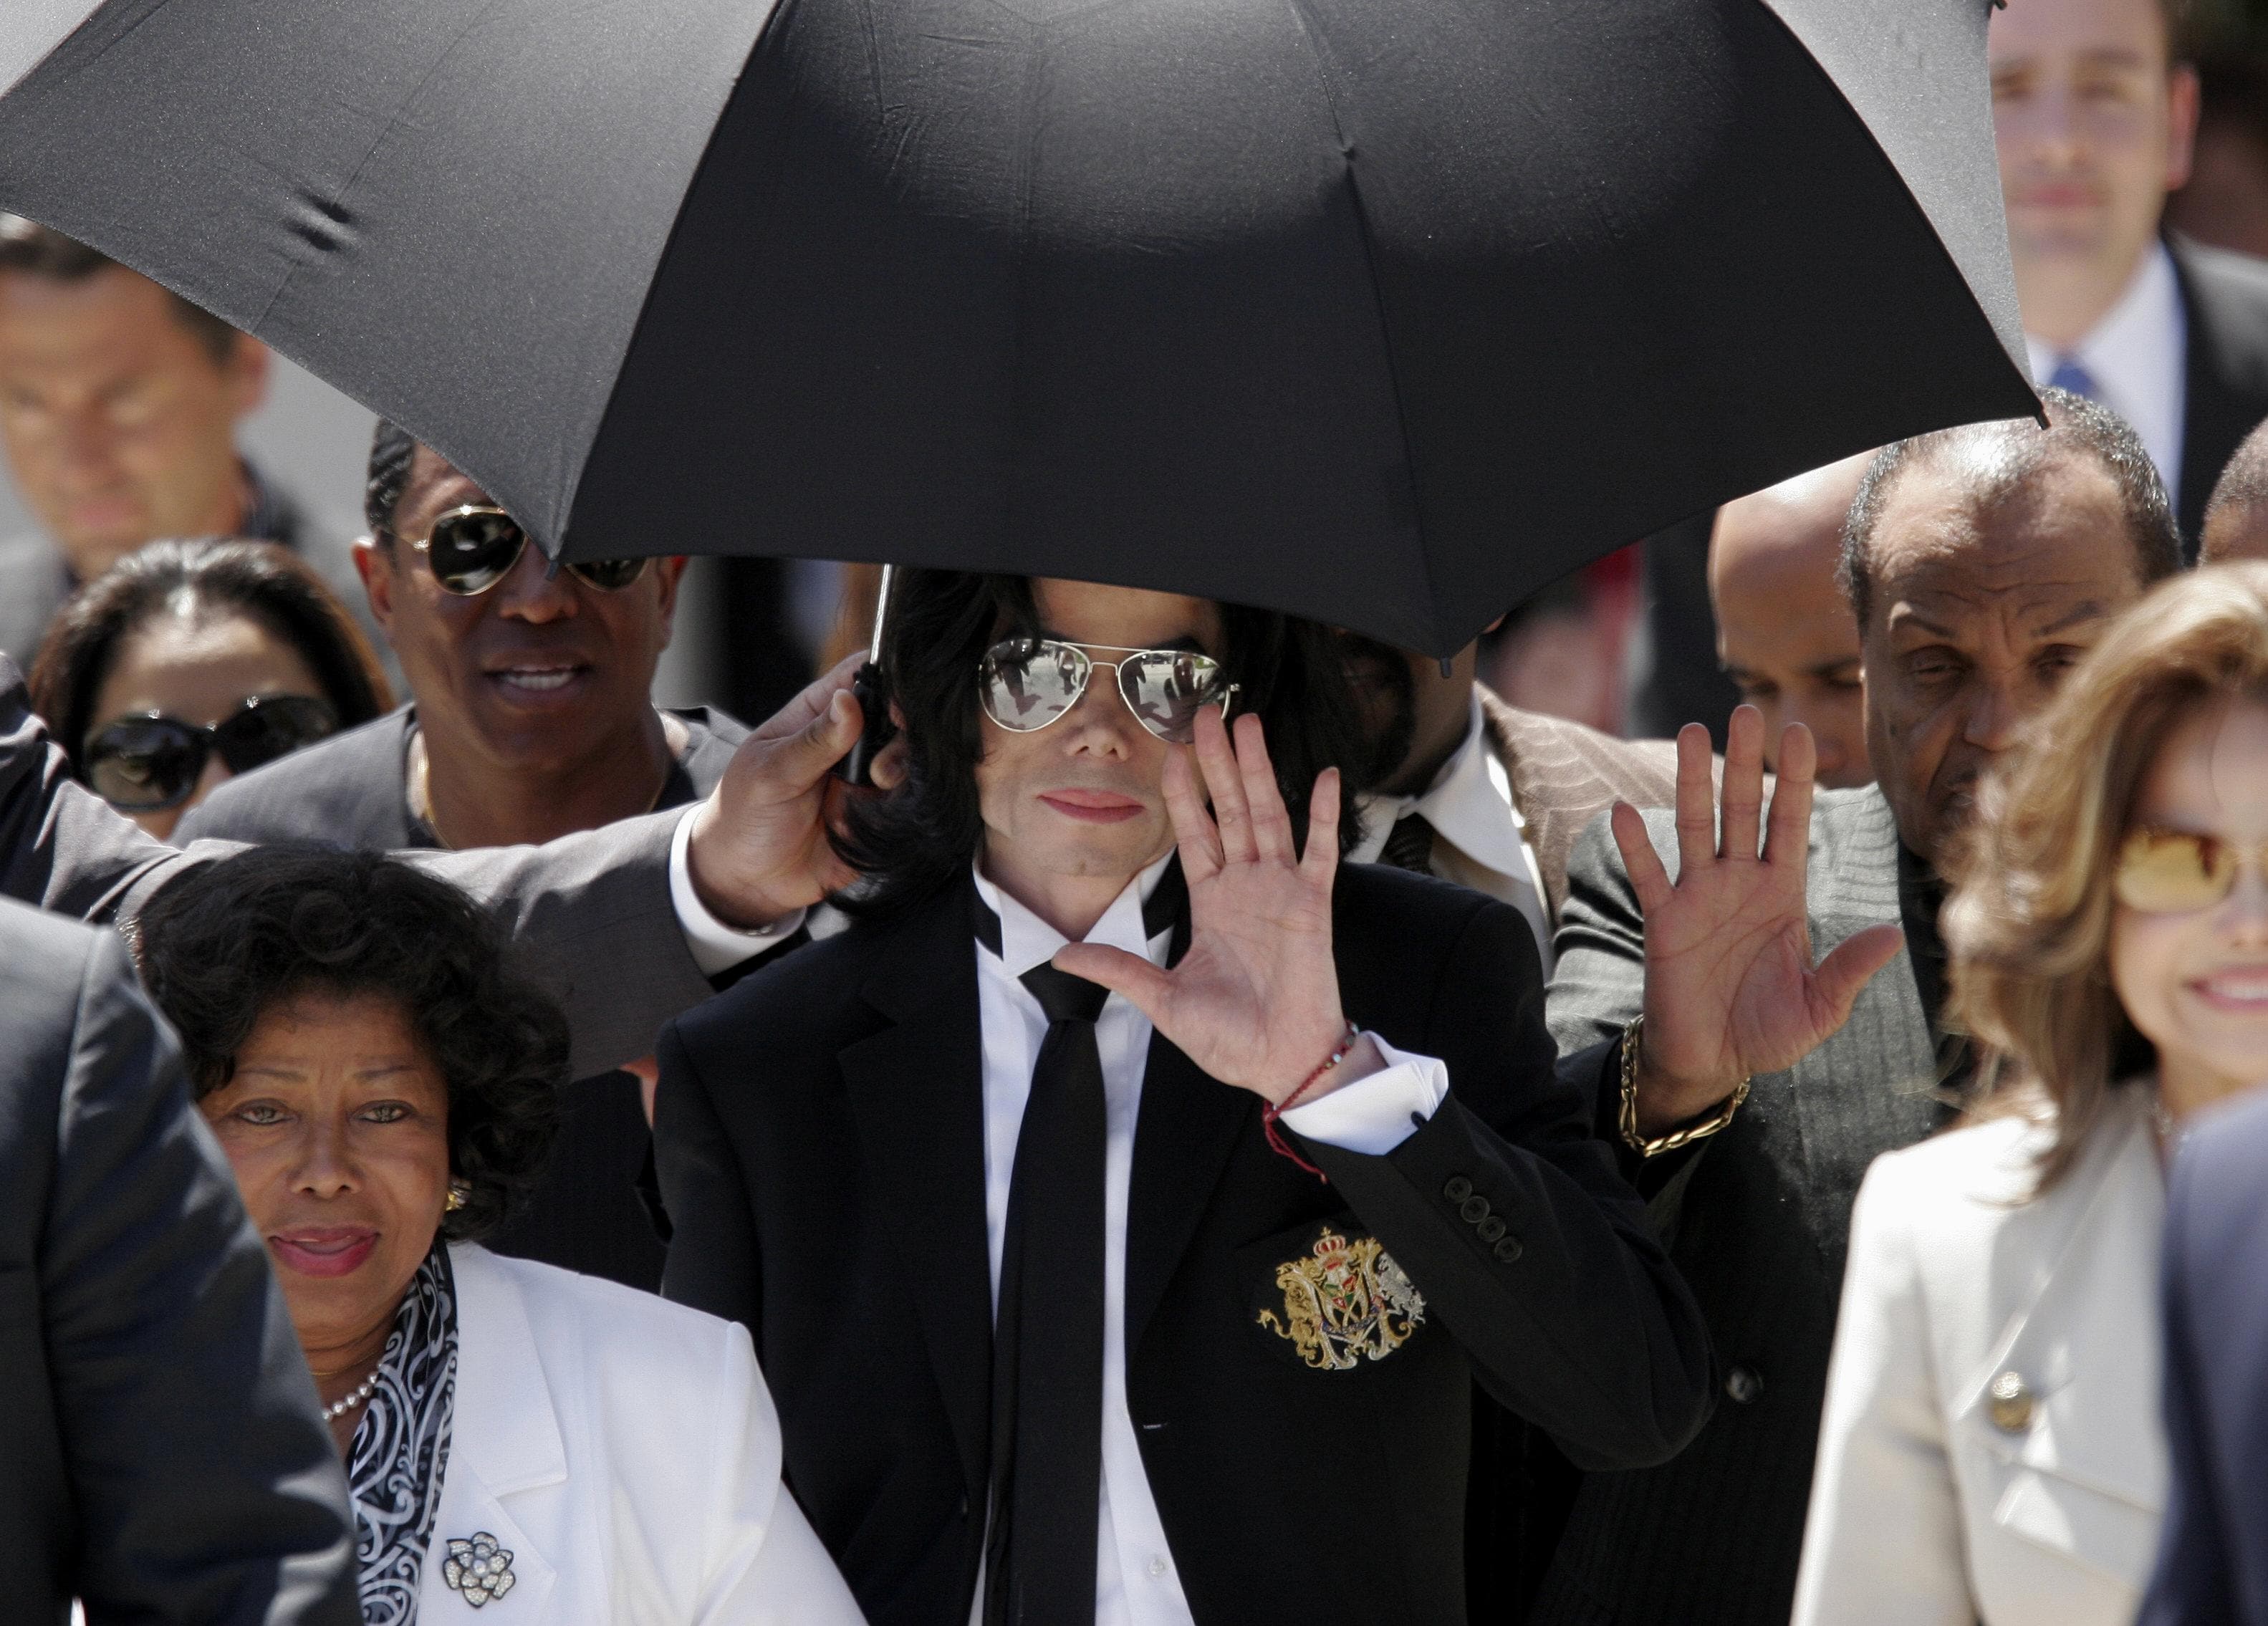 13 giugno 2005. Michael Jackson saluta i fan all'uscita dal tribunale di Santa Barbara, California. Accusato nel 2003 di aver molestato sessualmente due minori di 14 anni che aveva ospitato nella sua celebre villa ‘Neverland’, Jackson fu coinvolto in quello che i media americani definirono “il processo del secolo”. Dopo una vicenda durata due anni, ricca di scandali e clamorosi colpi di scena, la giuria decise all’unanimità di assolverlo da tutte le accuse. Le polemiche sono riemerse nel 2019 con l'uscita del documentario 'Leaving Neverland', diretto e prodotto dal regista britannico Dan Reed e incentrato sulla vita di due uomini, Wade Robson e James Safechuck, che raccontano di essere stati abusati sessualmente dal cantante